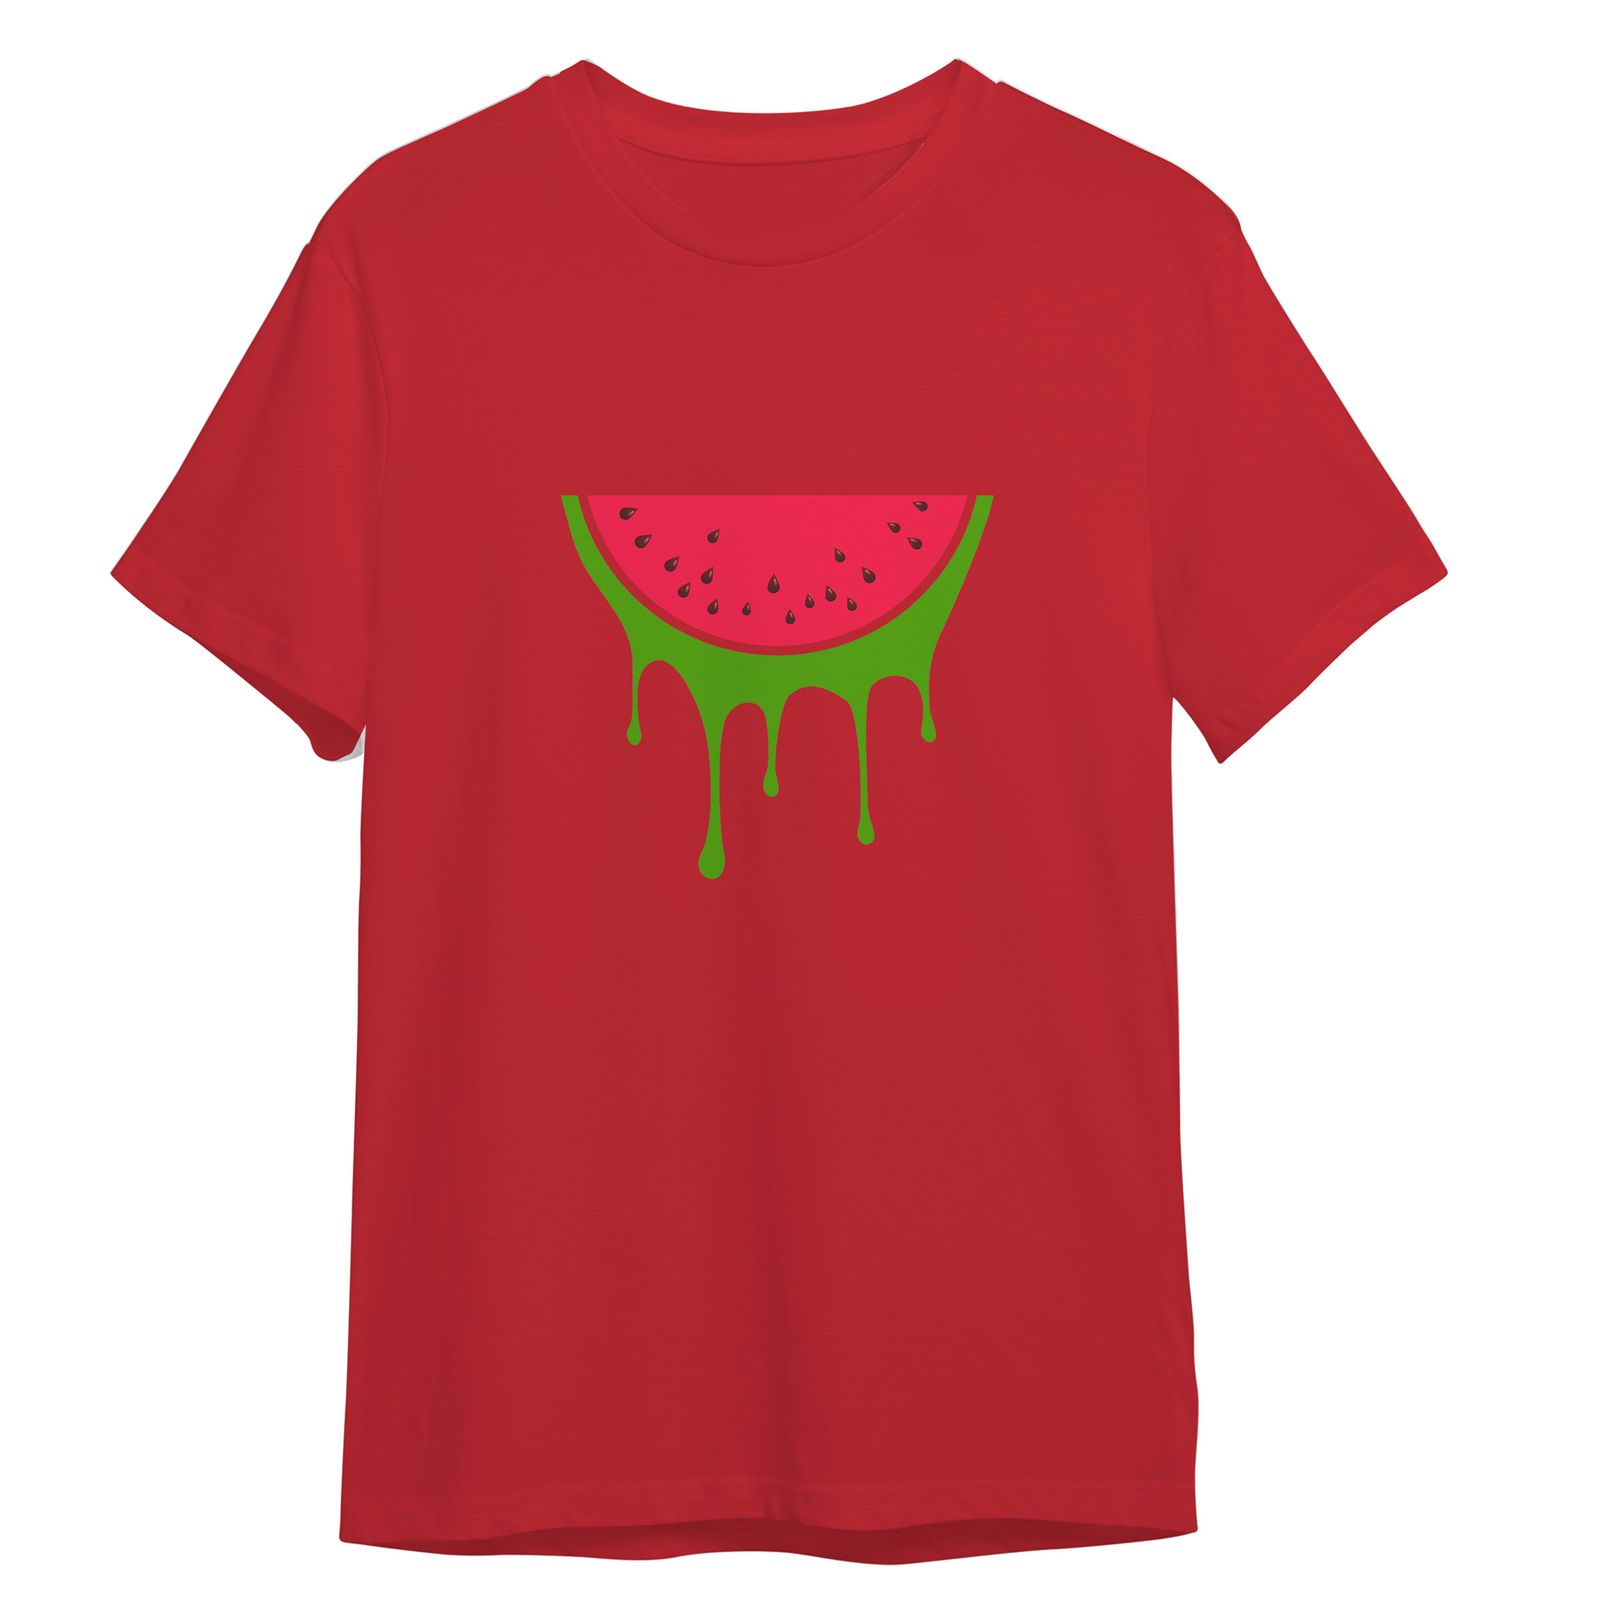 تی شرت آستین کوتاه بچگانه مدل شب یلدا هندونه کد 0165 رنگ قرمز